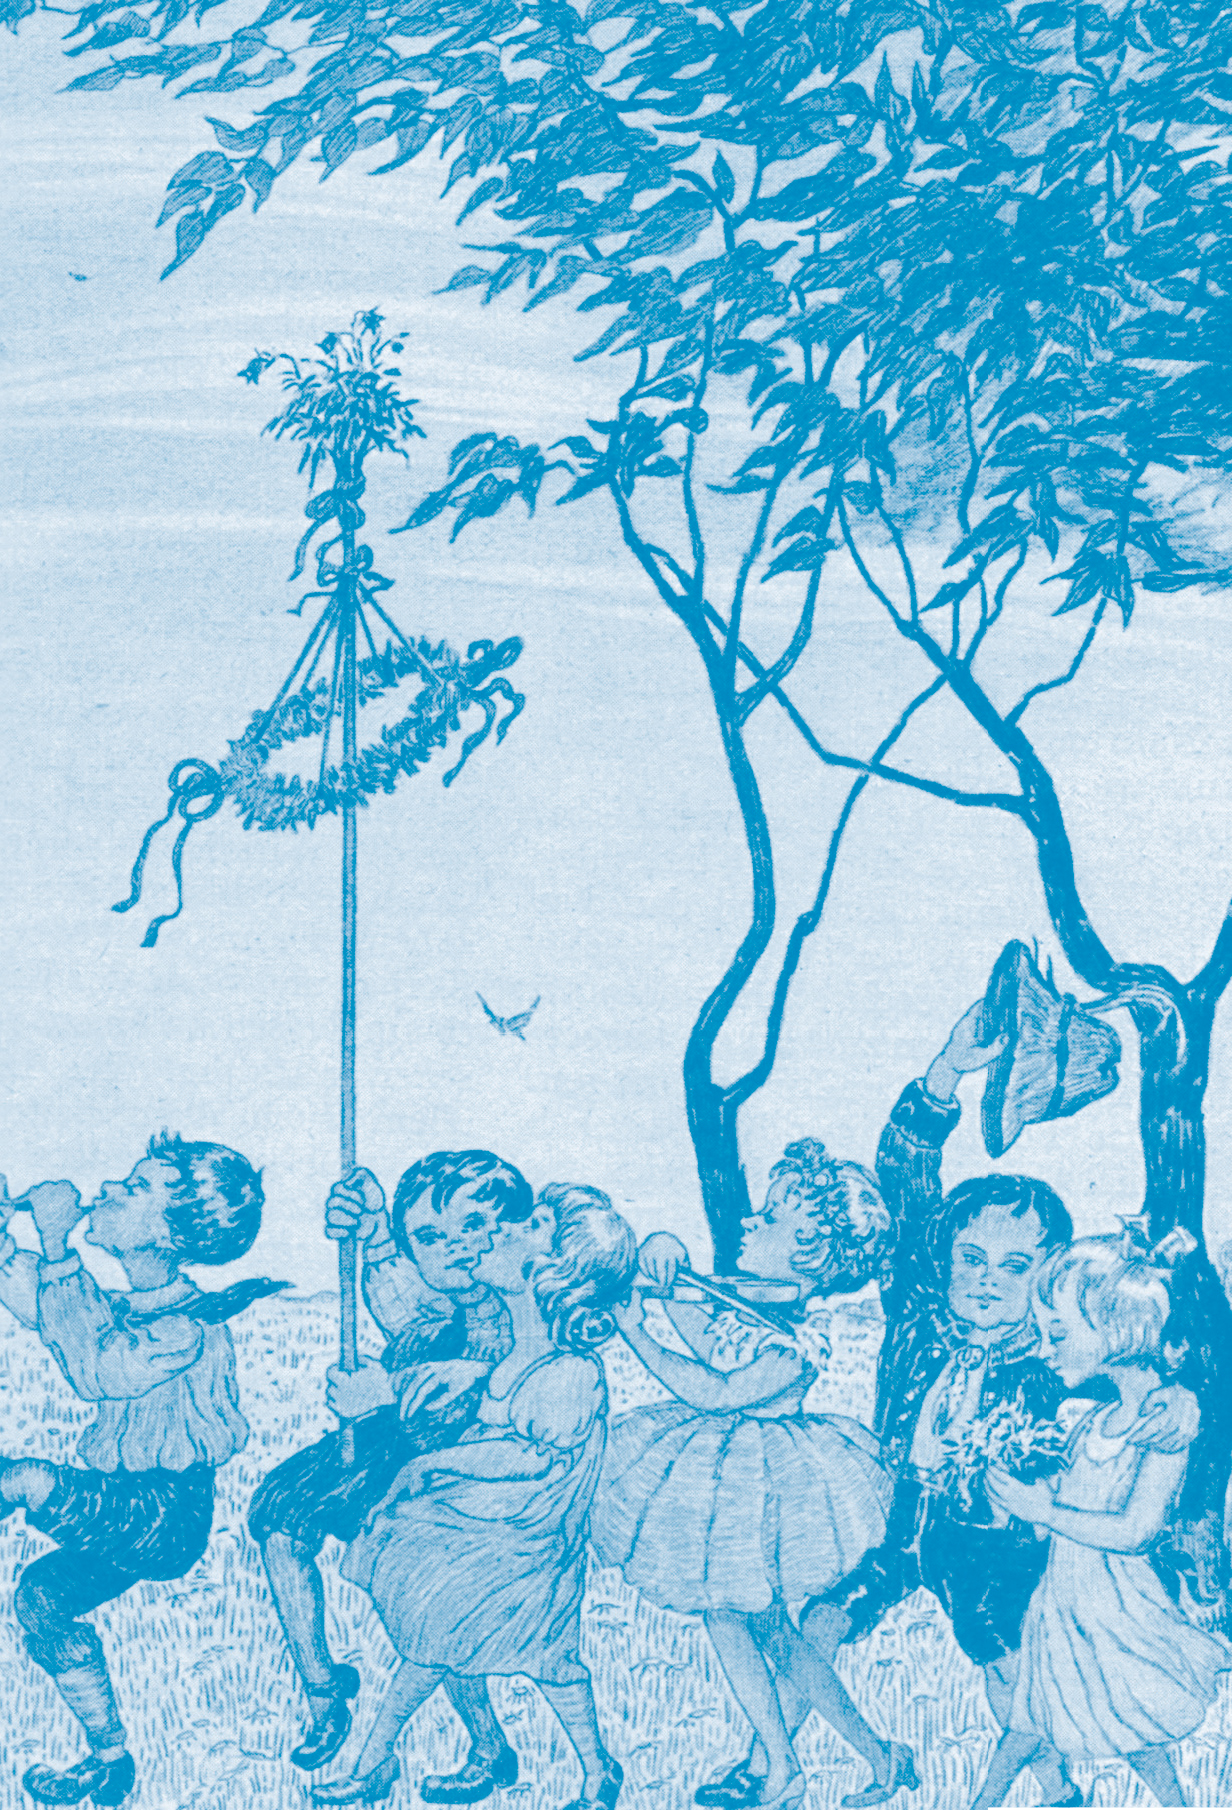 Illustration: Kinder mit einem Maibaum